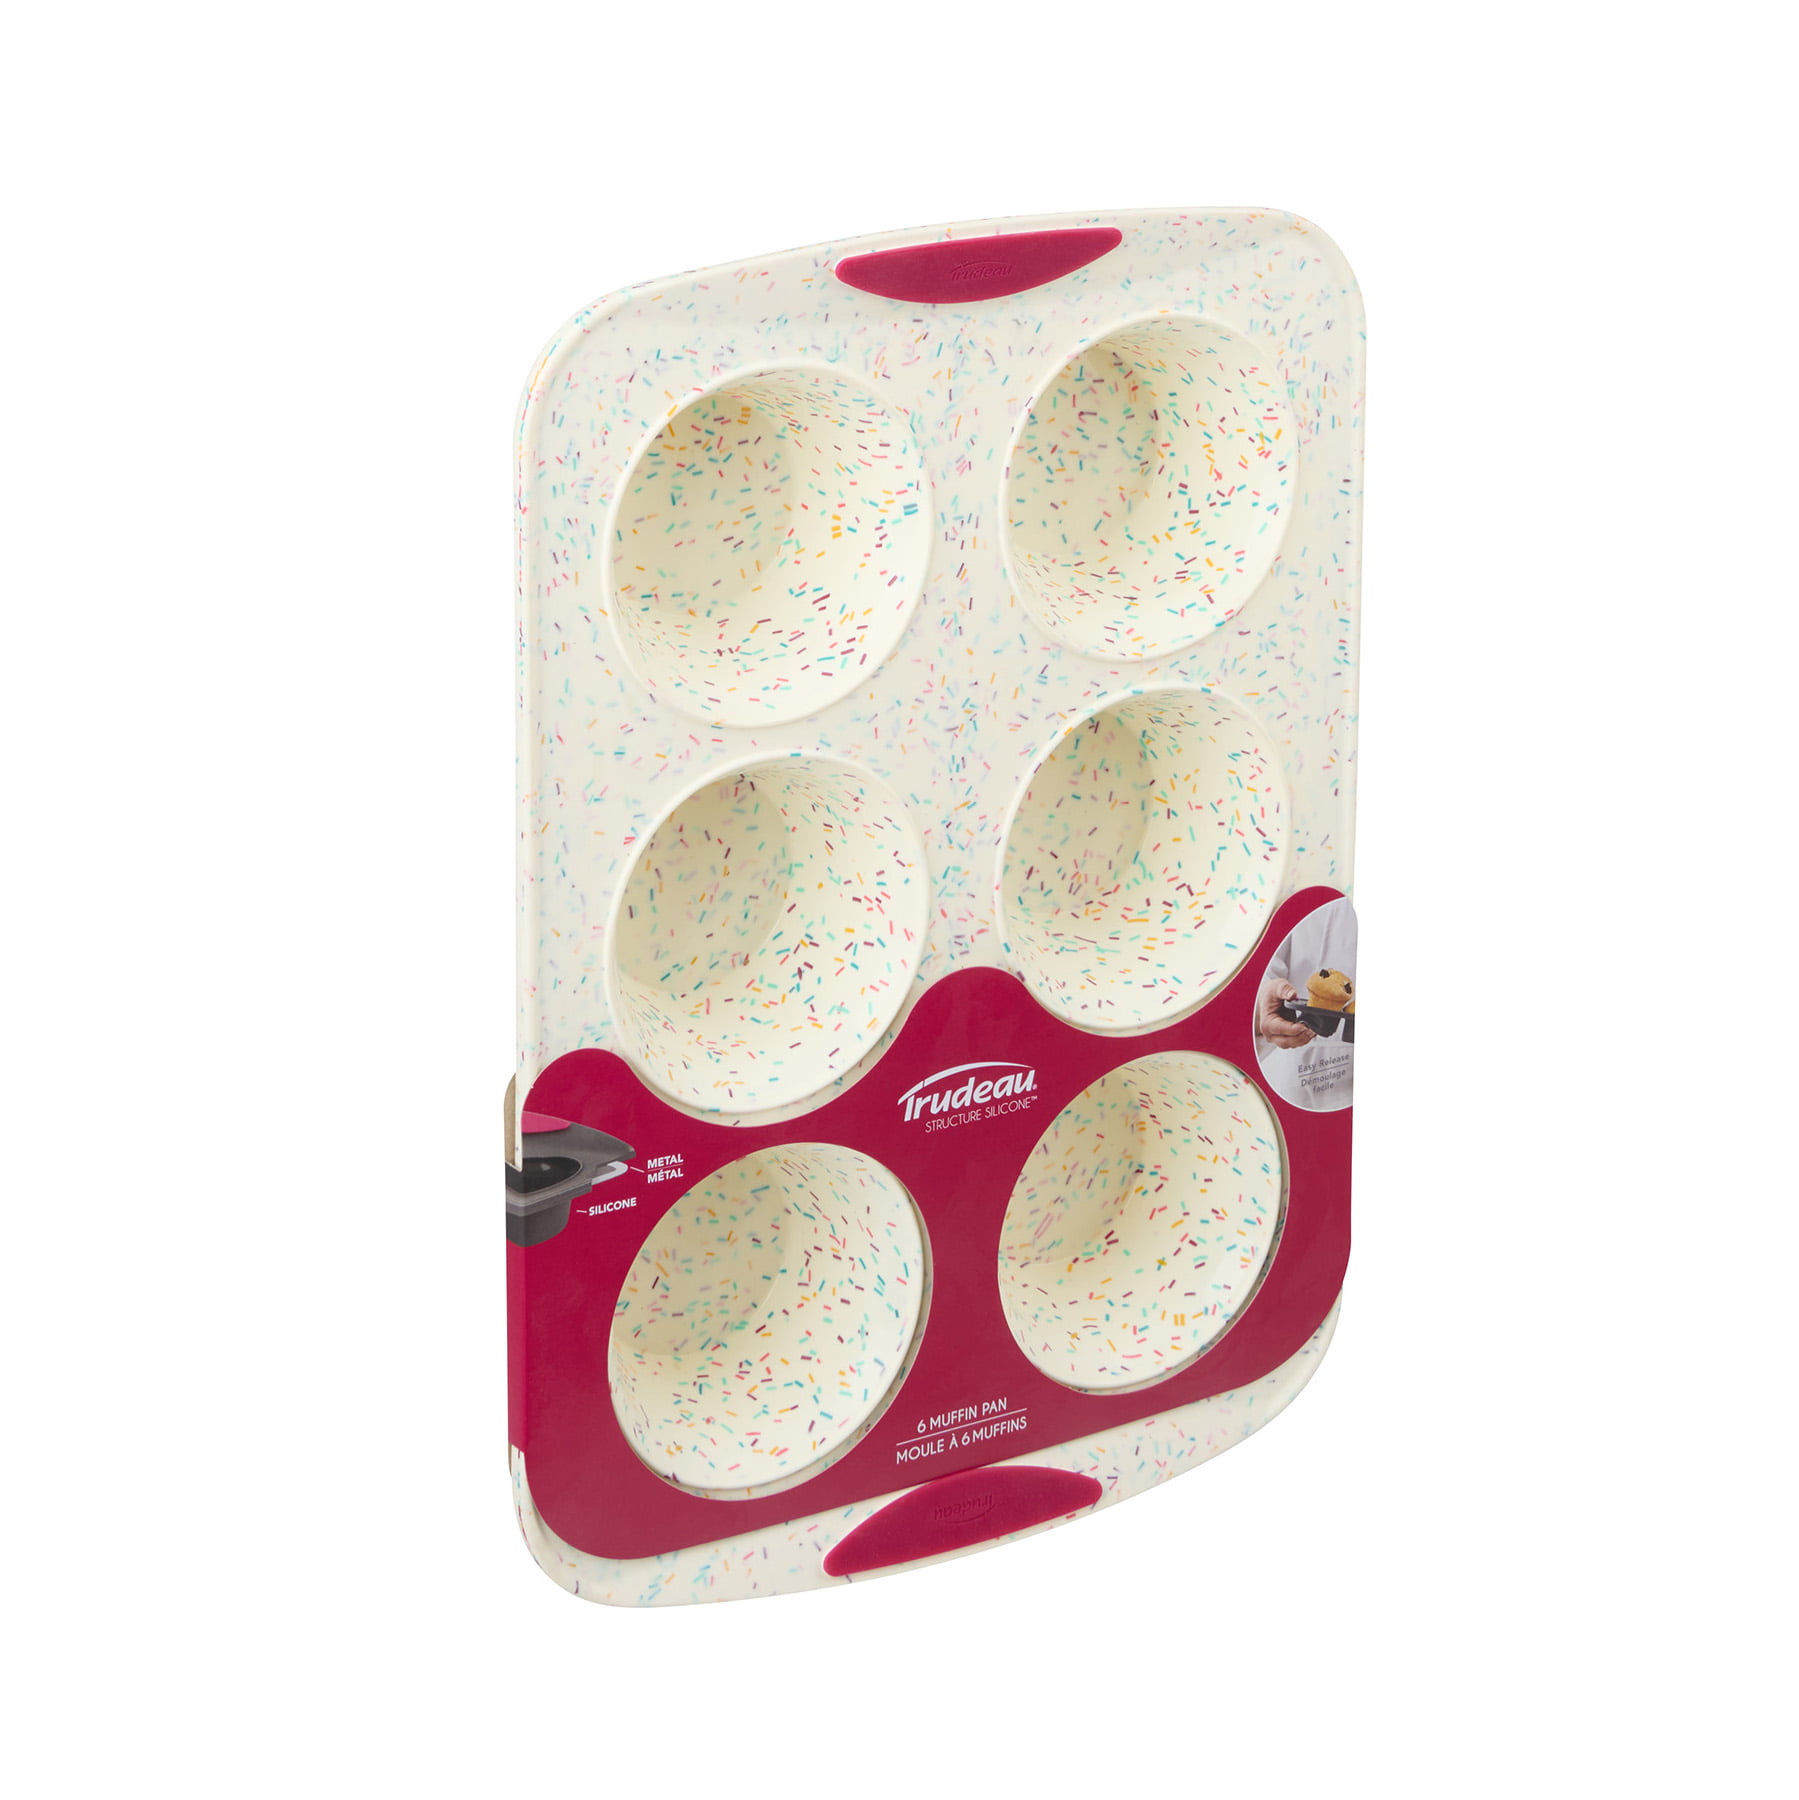 Trudeau 24 Cavity Silicone Mini Muffin Pan - Confetti